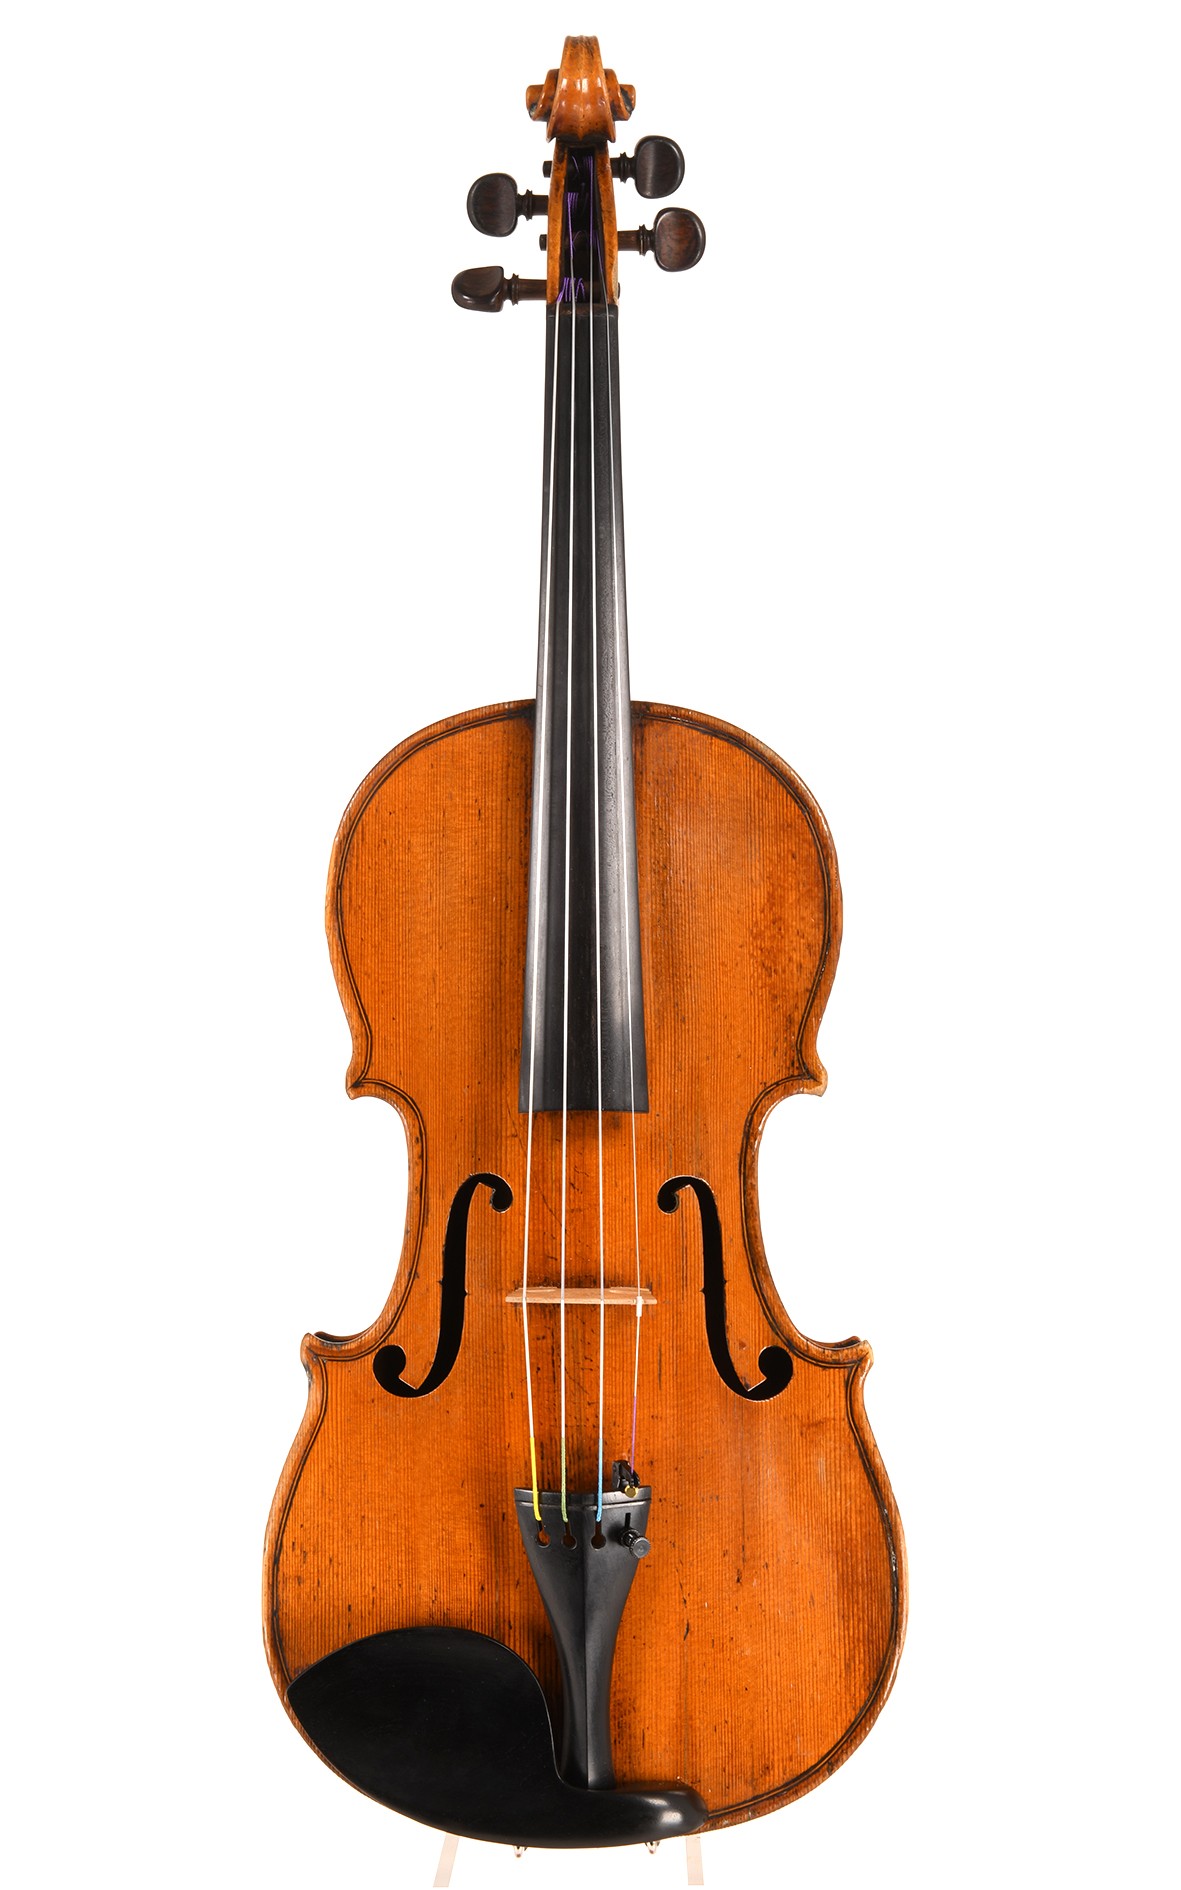 Rare violon du 18e siècle restauré - un instrument de voyage professionnel parfait